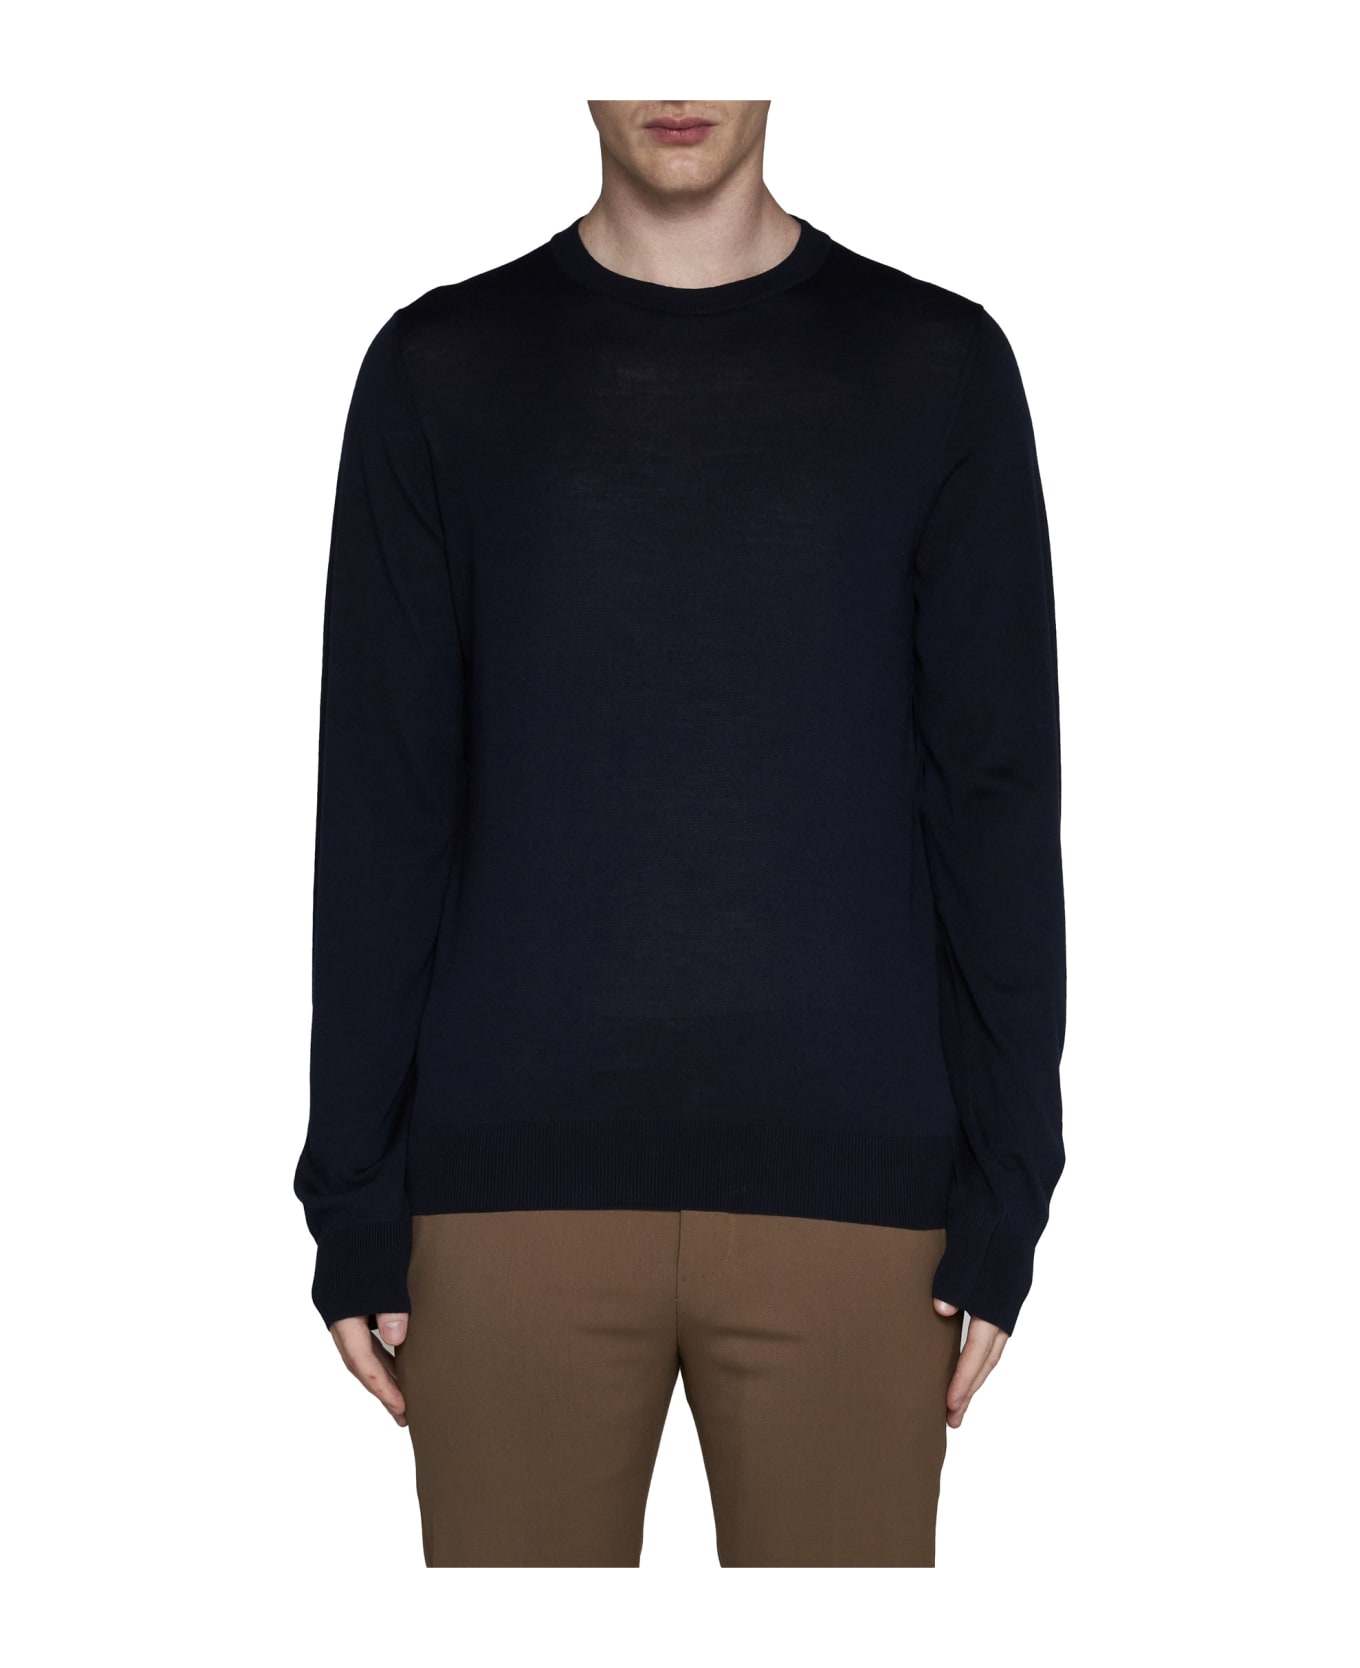 Piacenza Cashmere Sweater - Blue navy ニットウェア